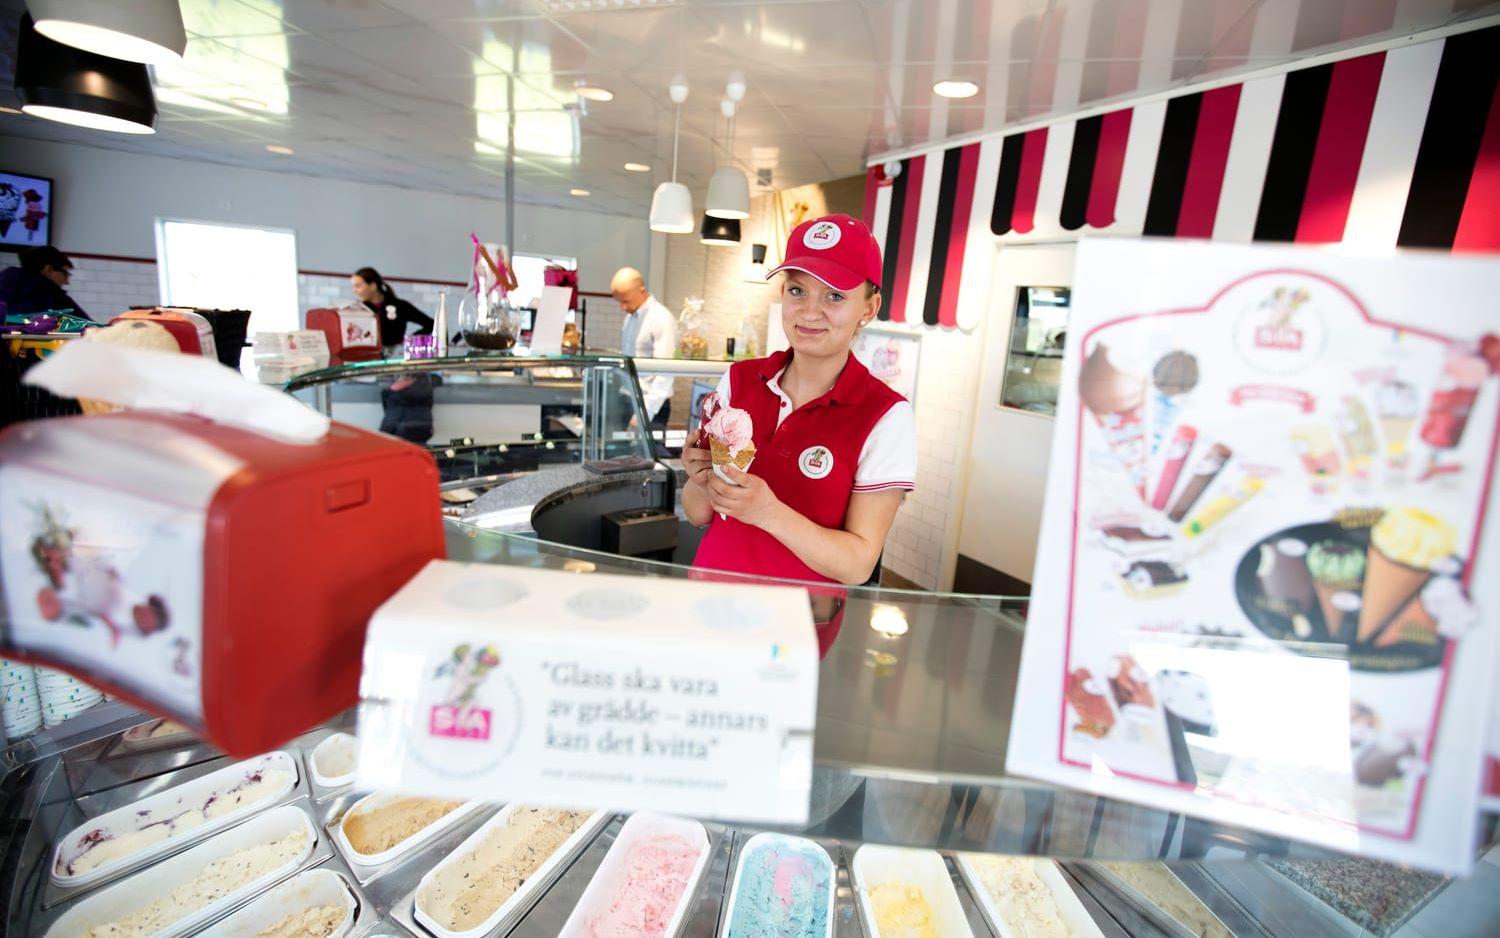 Stark tillväxt. En av dem som arbetar i glassföretagets butik i Slöinge är Wilma Henningsson. Här finns bland annat ett stort utbud av andrasortering och en glassbar med närmare 50 kulglasssmaker. Butiken renoverades 2014 och har sedan dess haft en tillväxt på omkring 30 procent per år. Bild: Patrik Ljungman